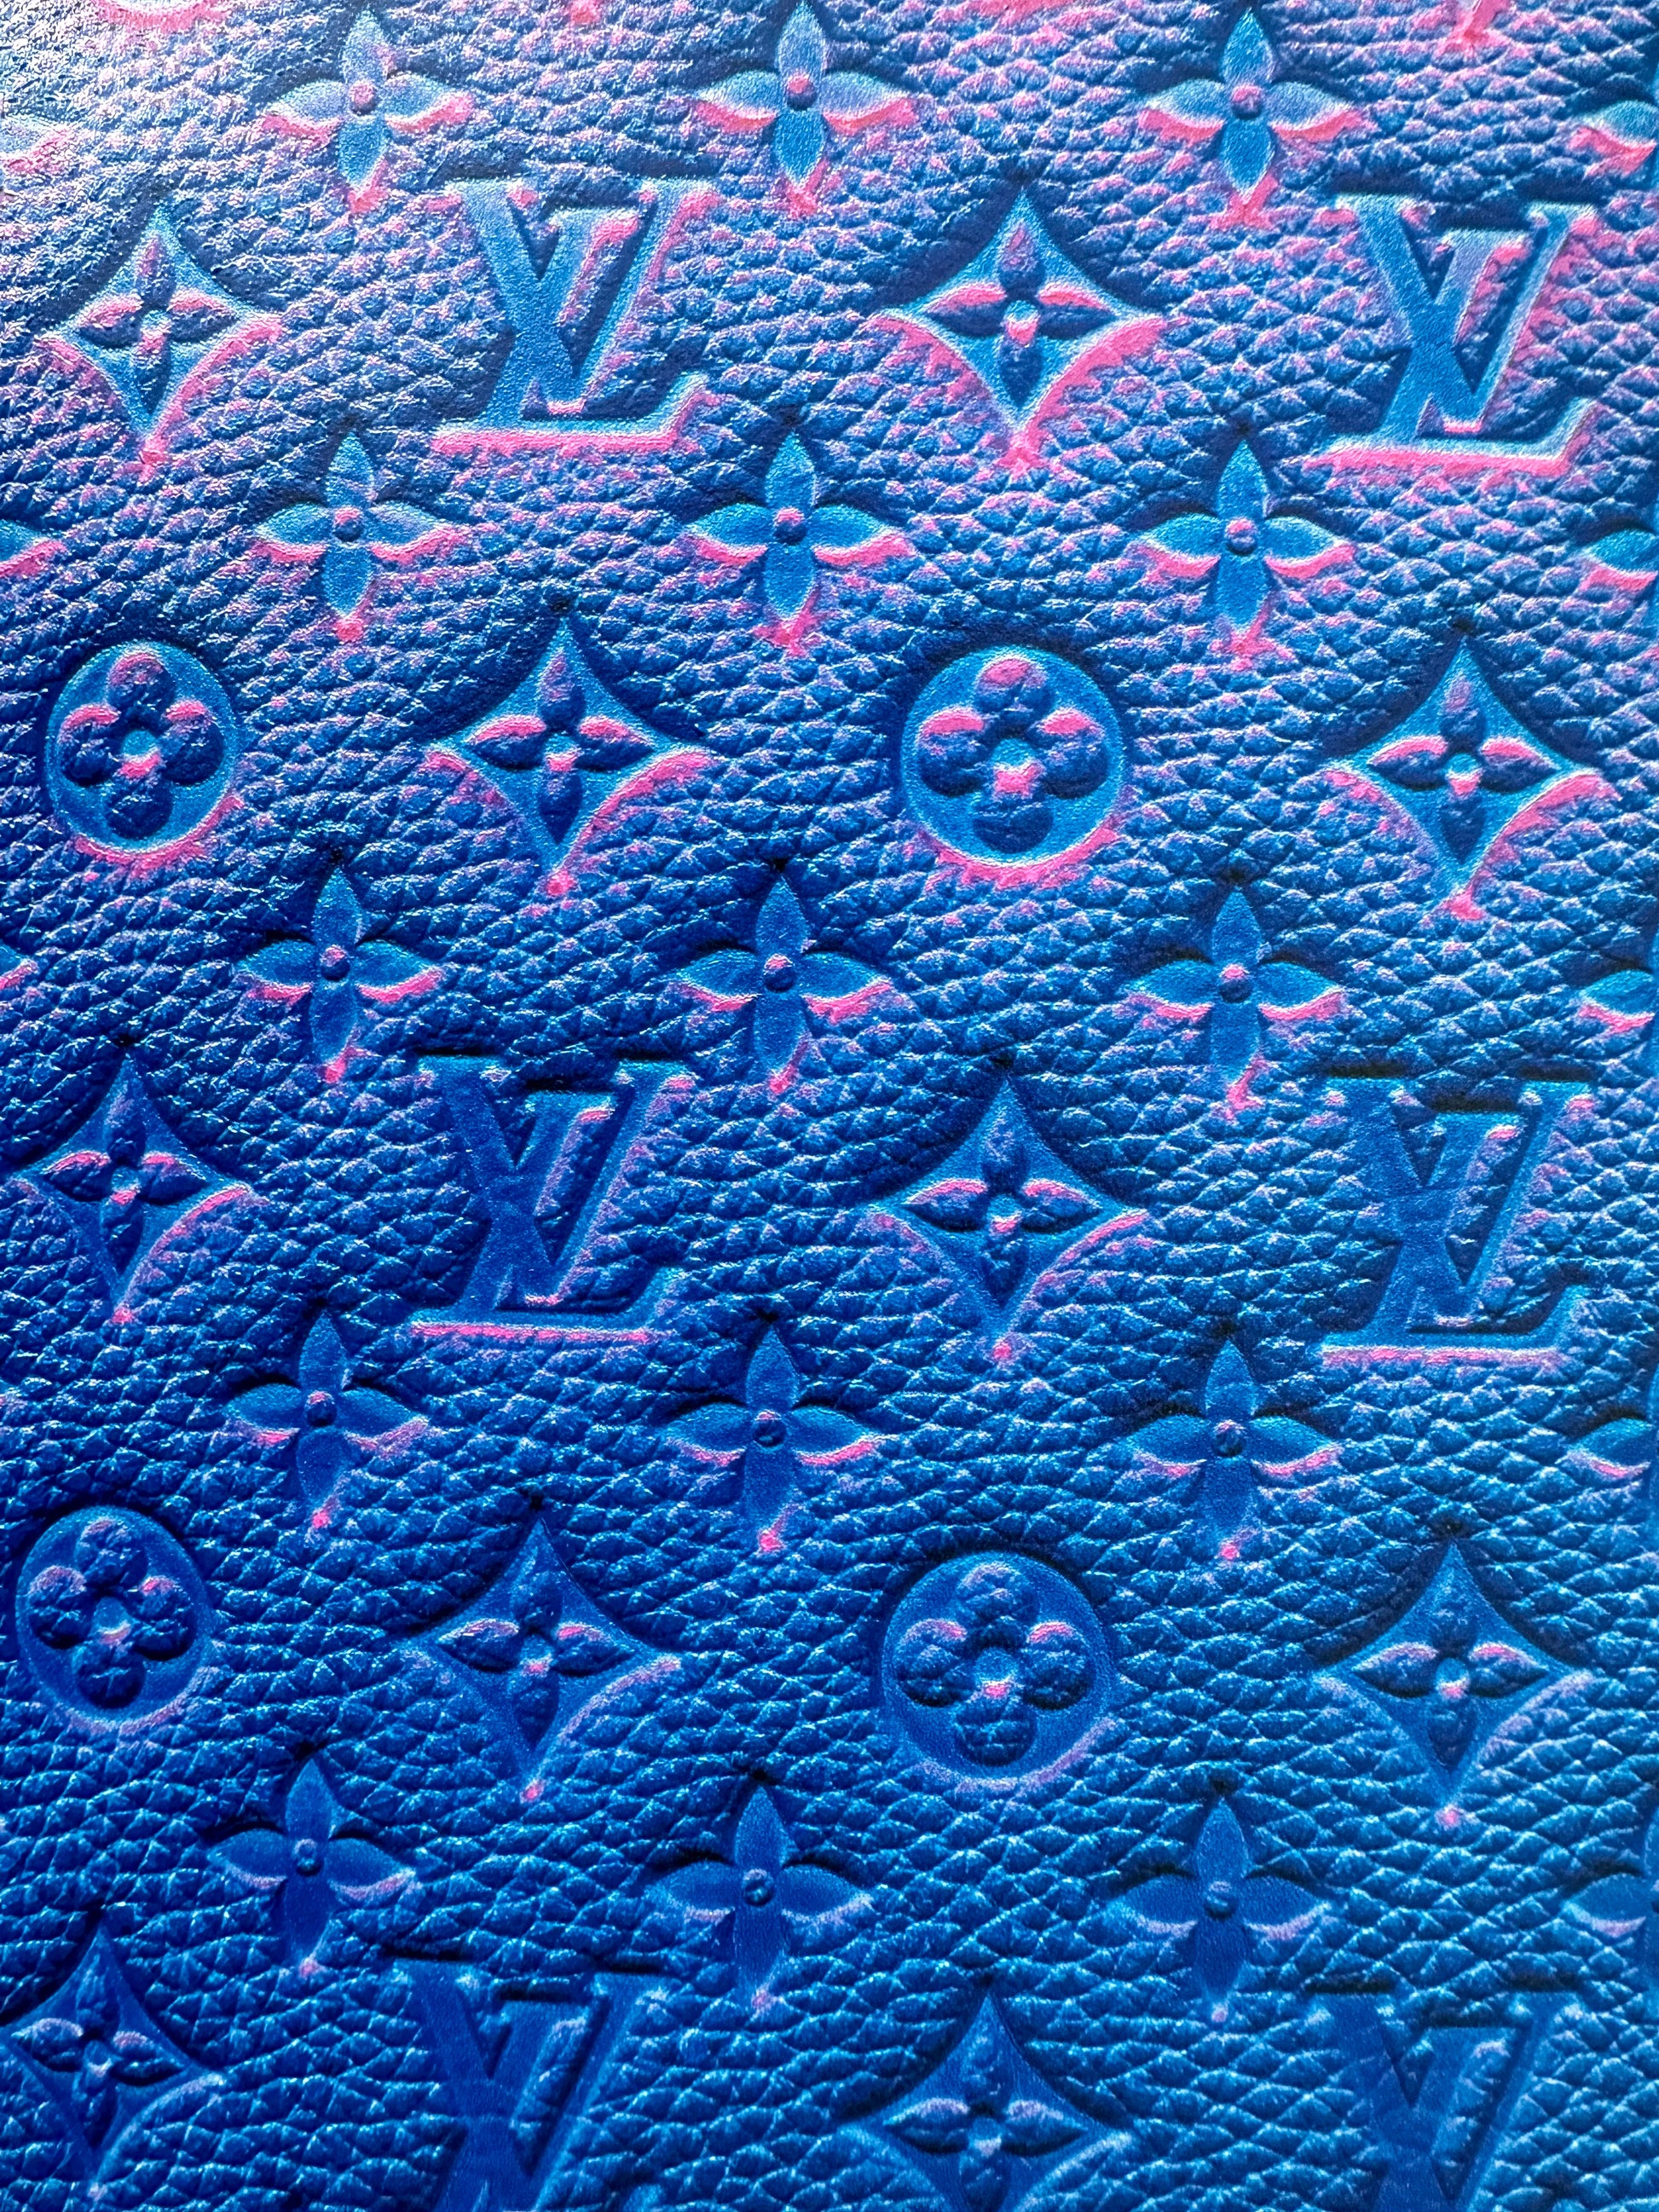 vuitton wallpaper blue